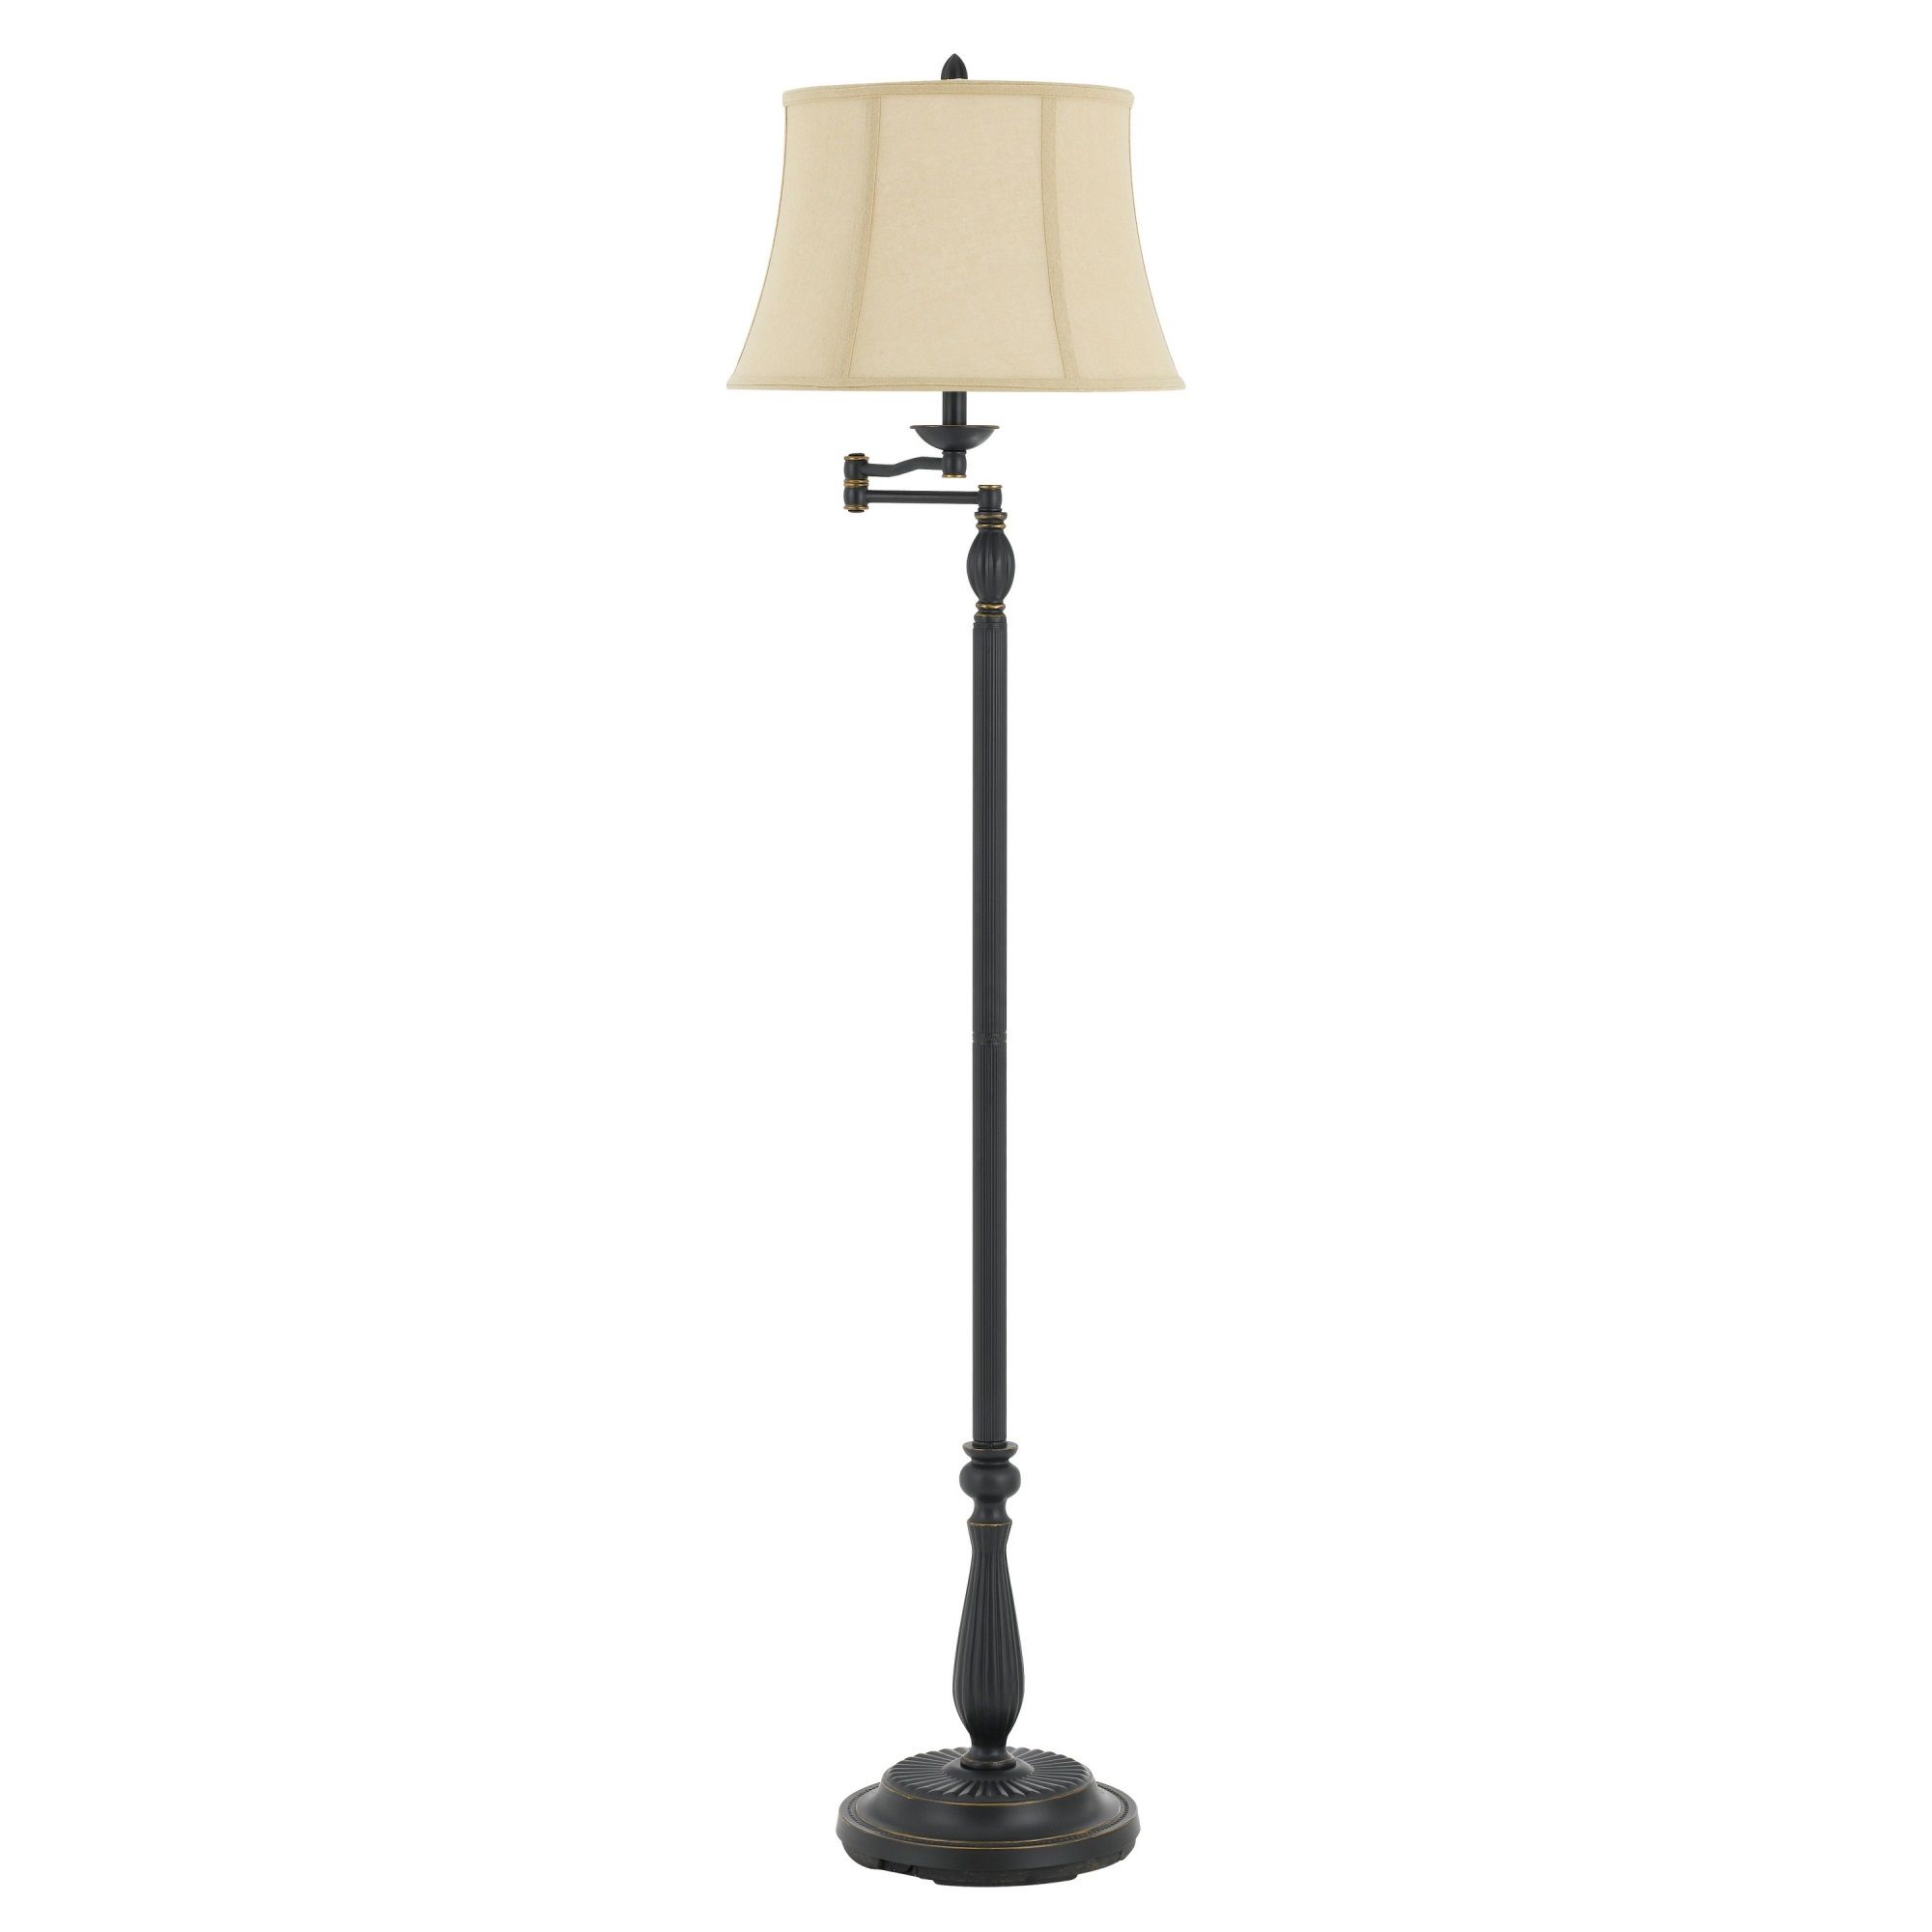 150w 3 Way Resin Swing Arm Floor Lamp With Bell Shade,dark Bronze And Beige  – Walmart Regarding 2 Arm Floor Lamps (View 9 of 15)